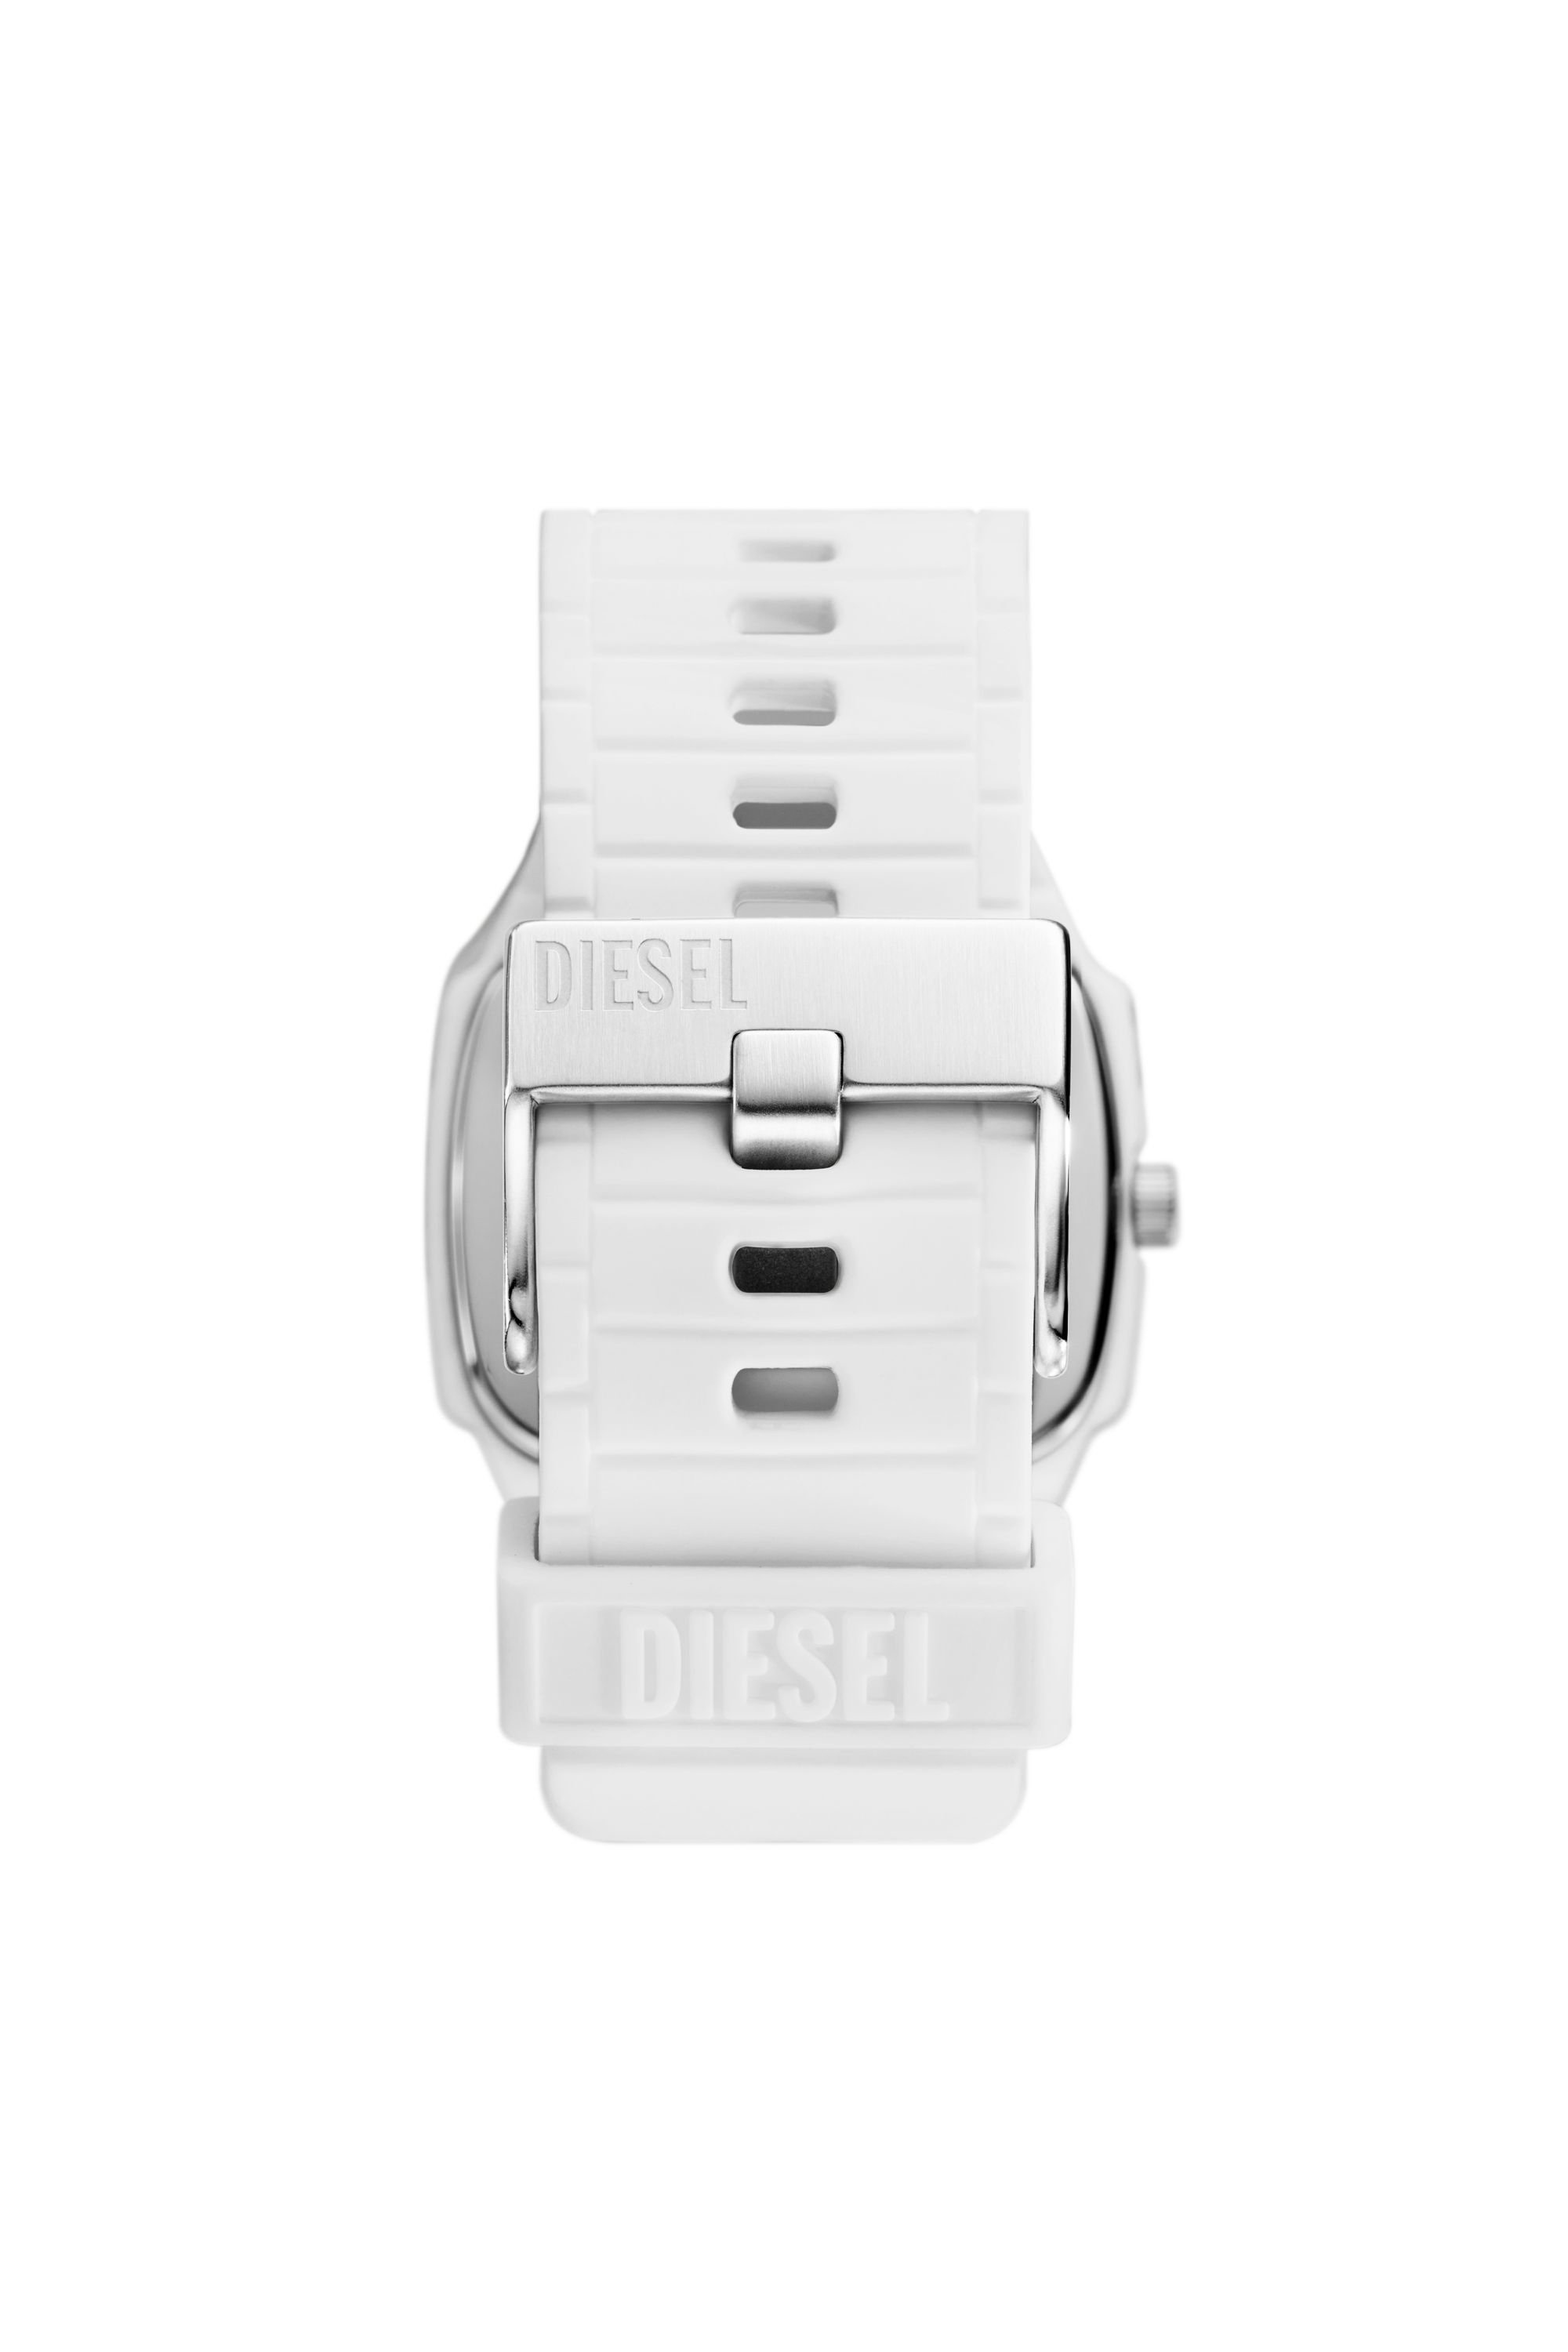 Diesel - DZ2204, Blanco - Image 2